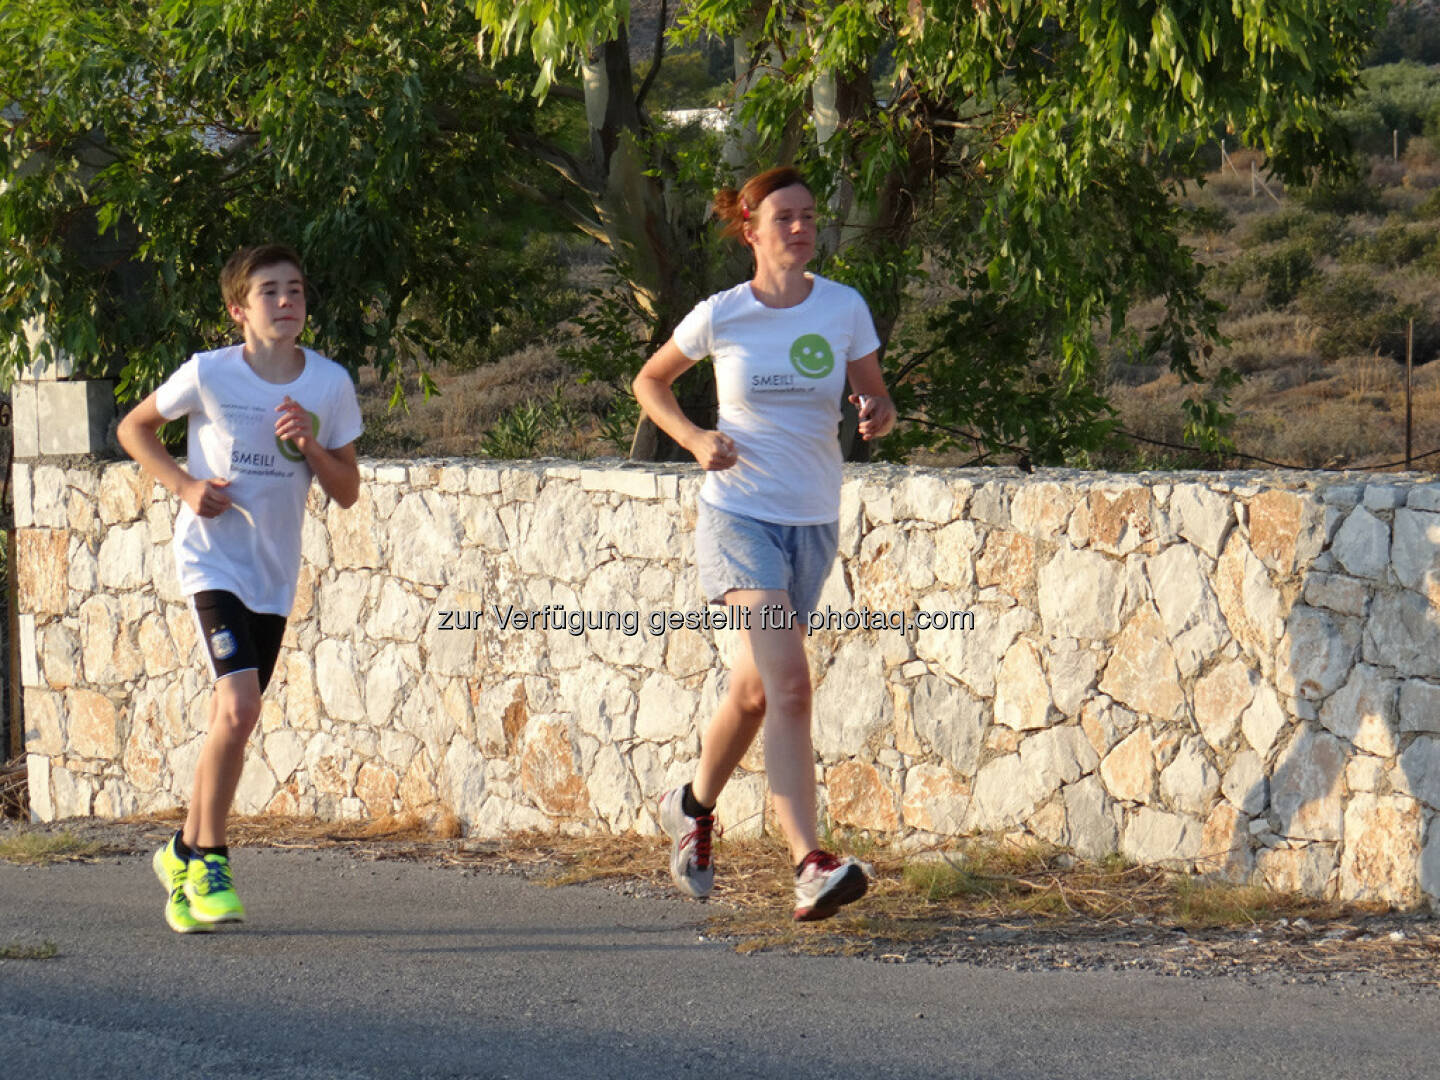 Nikolas und Martina Draper beim Laufen auf Kreta, Smeil!-Shirts in der Immofinanz Edition, http://martina-draper.at//2013/08/23/smeil-shirts_-_perfekt_fur_sport_und_freizeit#bild_12666